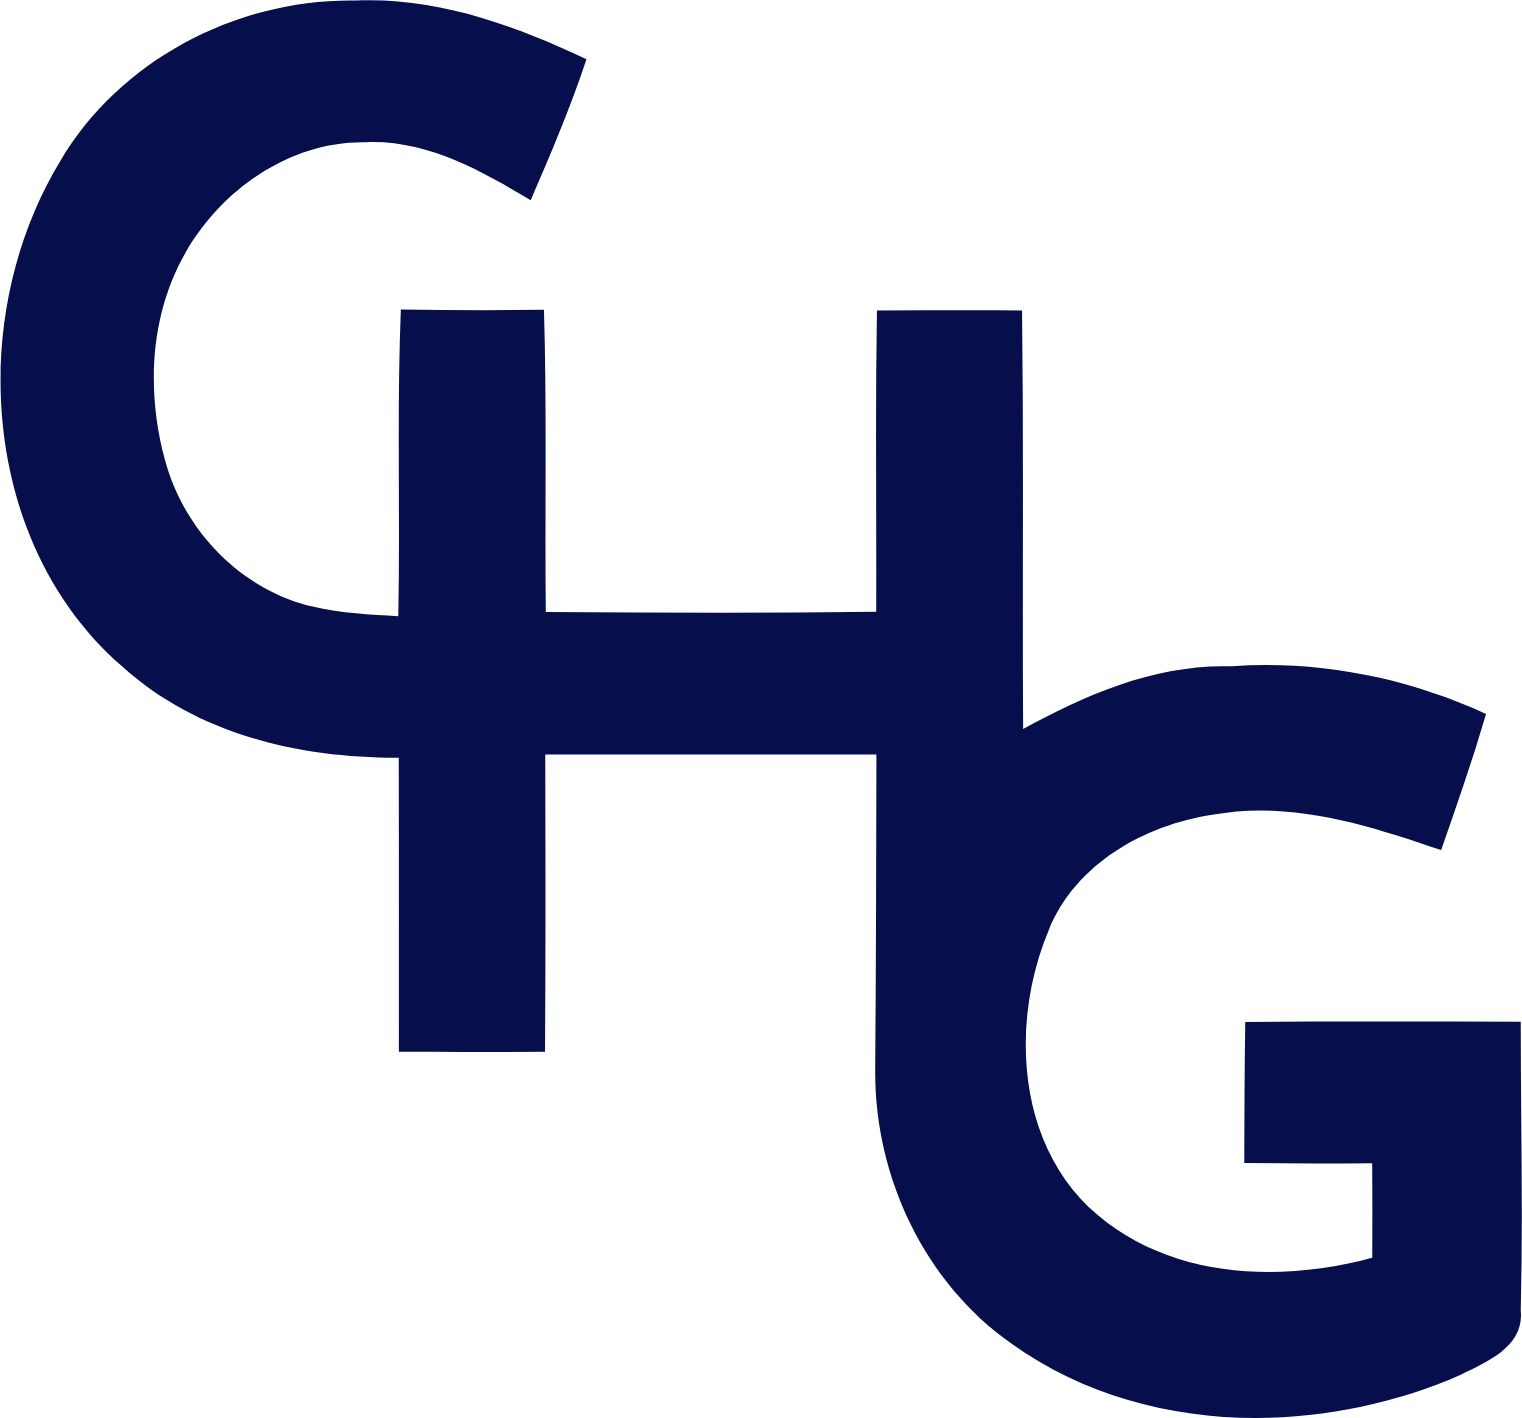 CorpHousing Group logo (PNG transparent)